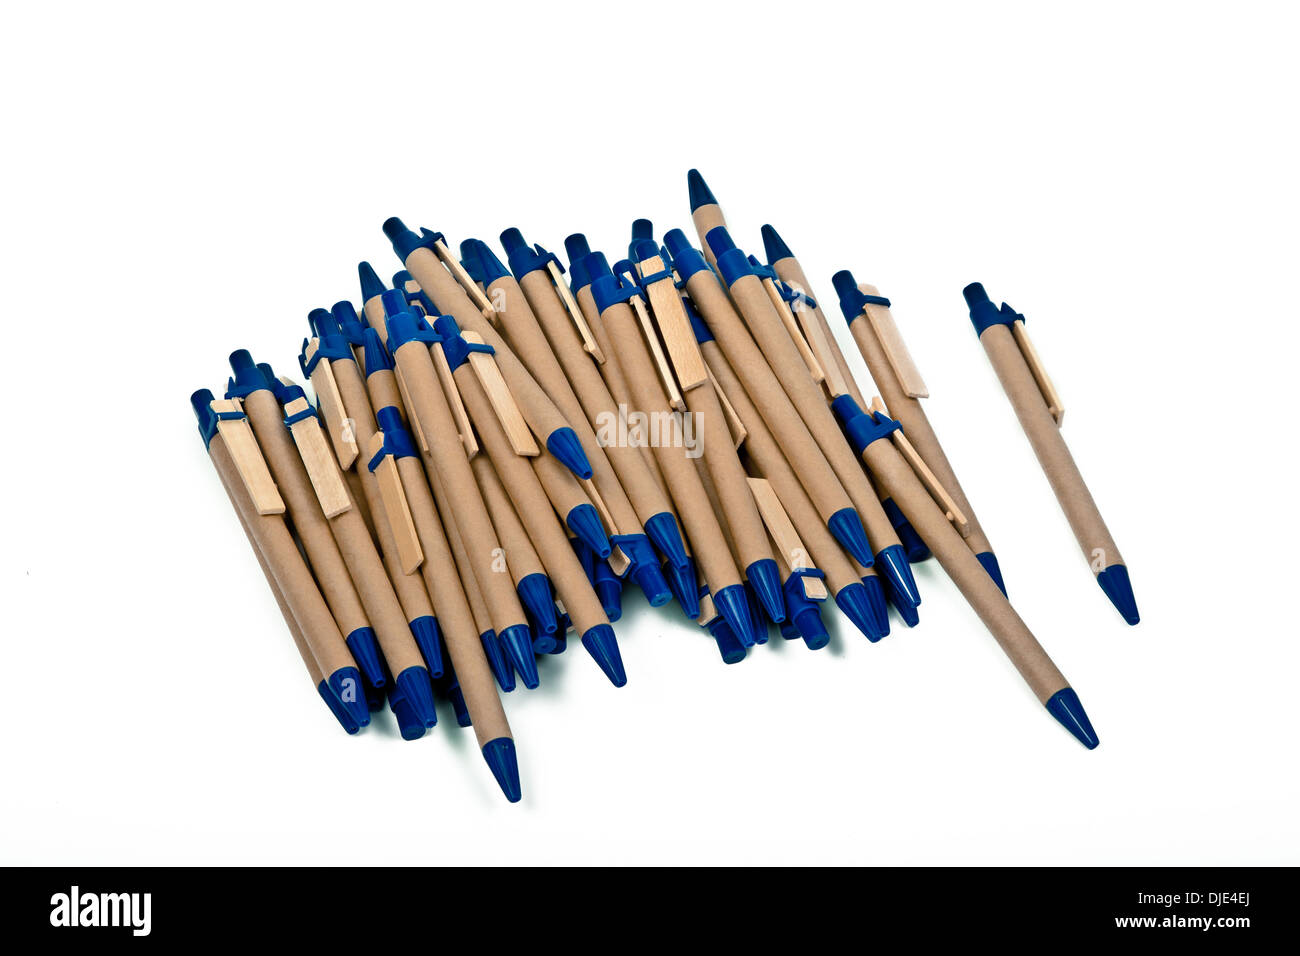 Kugelschreiber, isoliert auf weißem Hintergrund Stockfoto